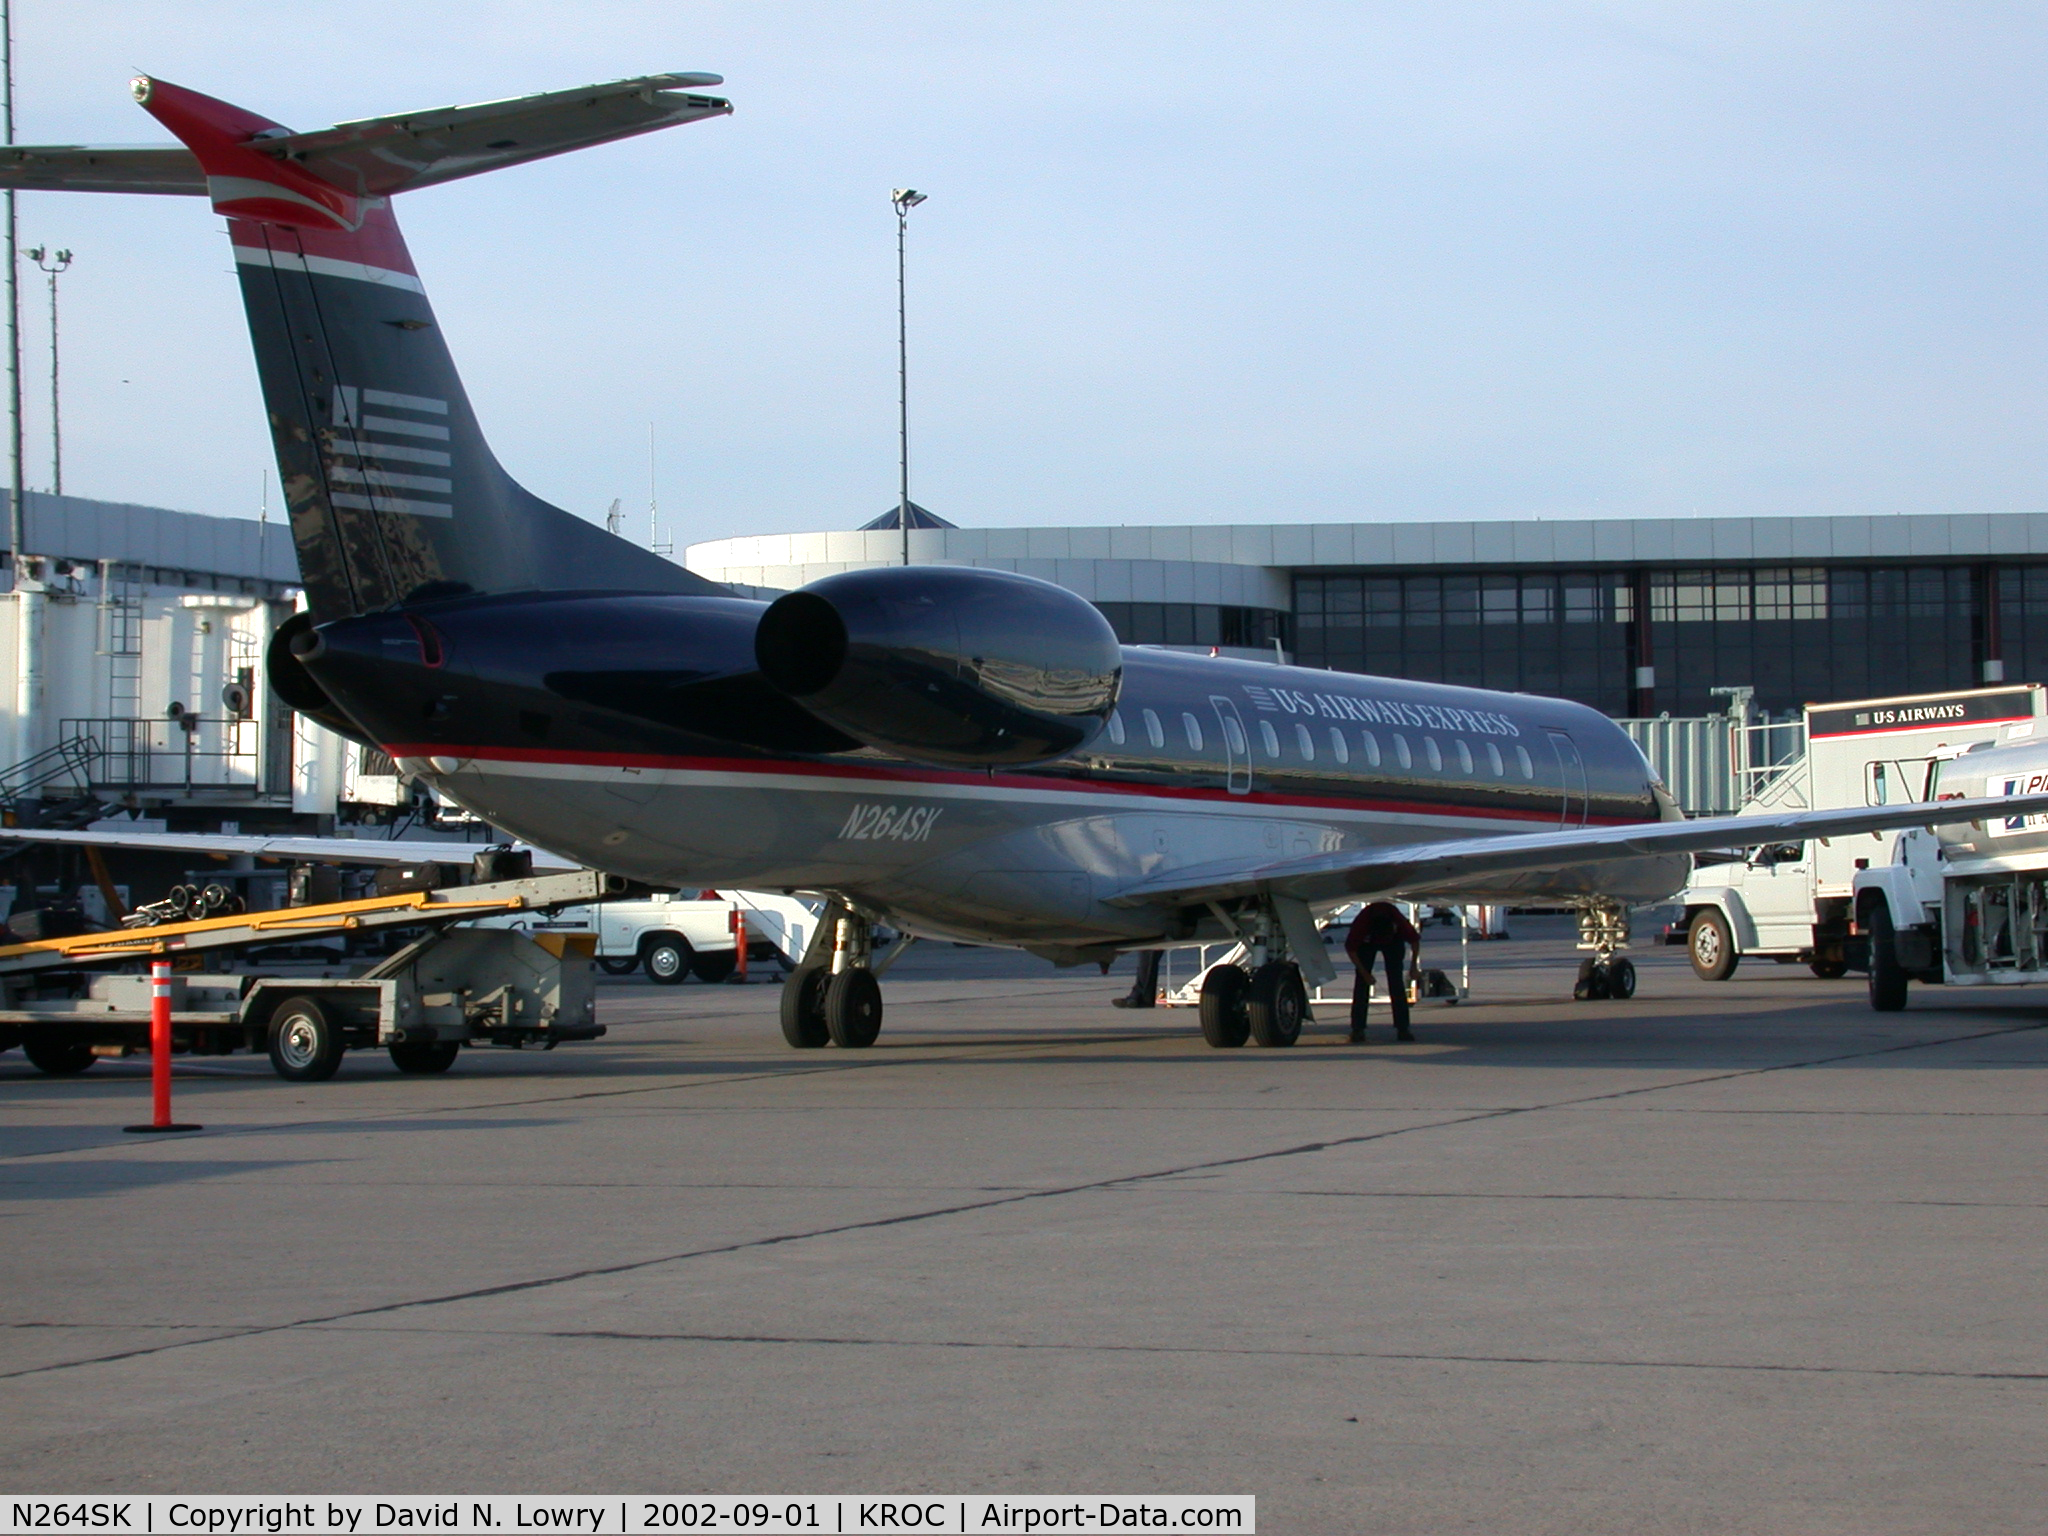 N264SK, 2000 Embraer ERJ-145LR (EMB-145LR) C/N 145221, N264SK at KROC.